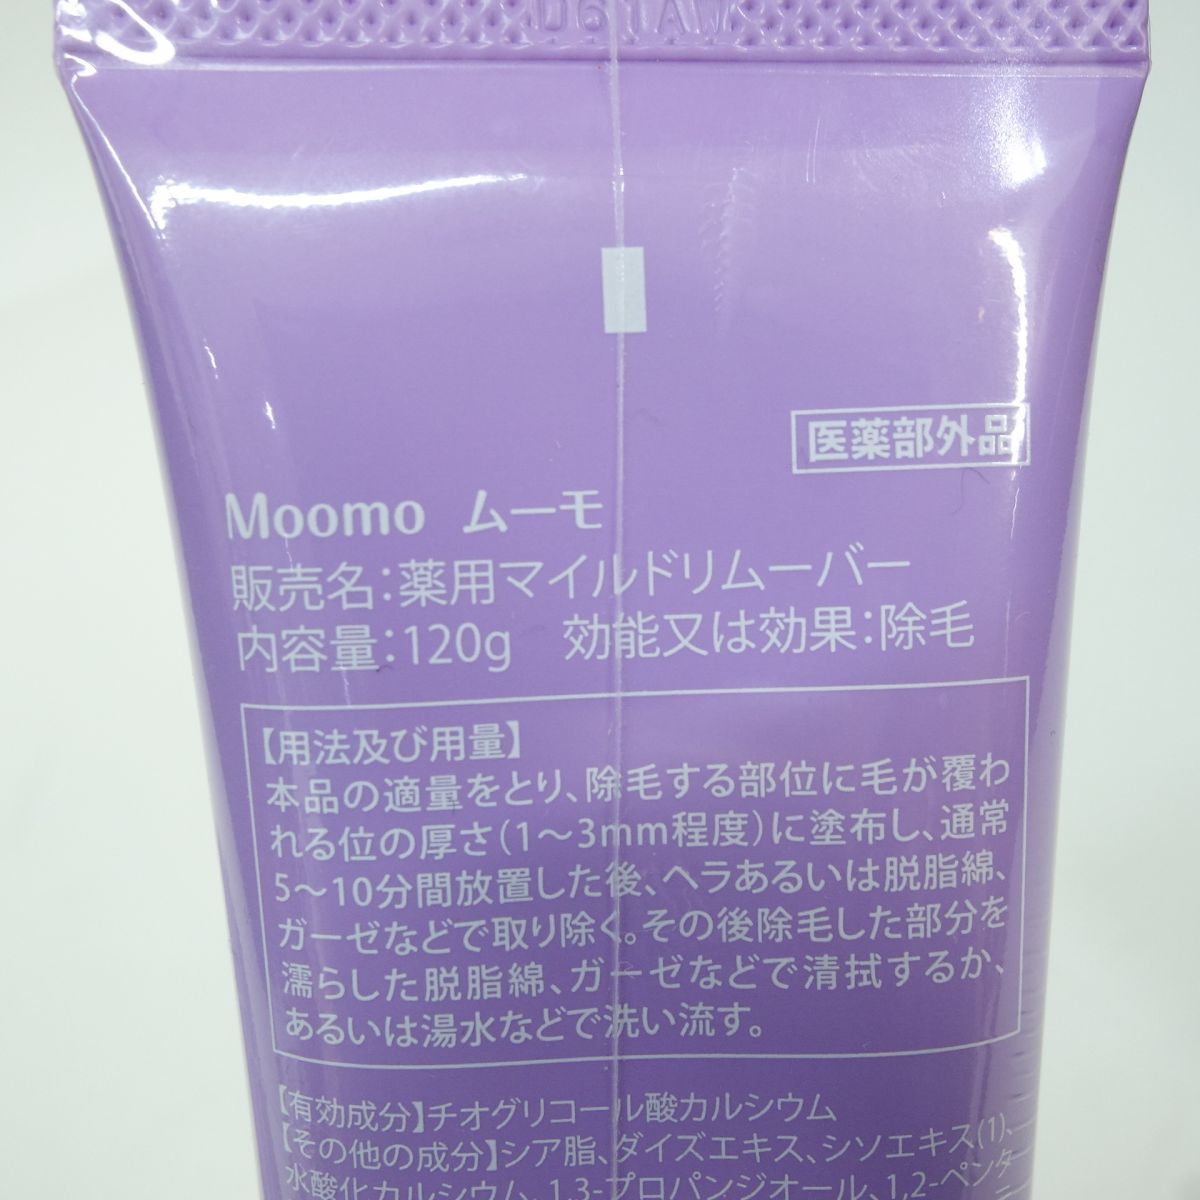 110 [ unopened ]Moomom-mo medicine for mild remover depilation cream 120g quasi drug 4 pcs set 